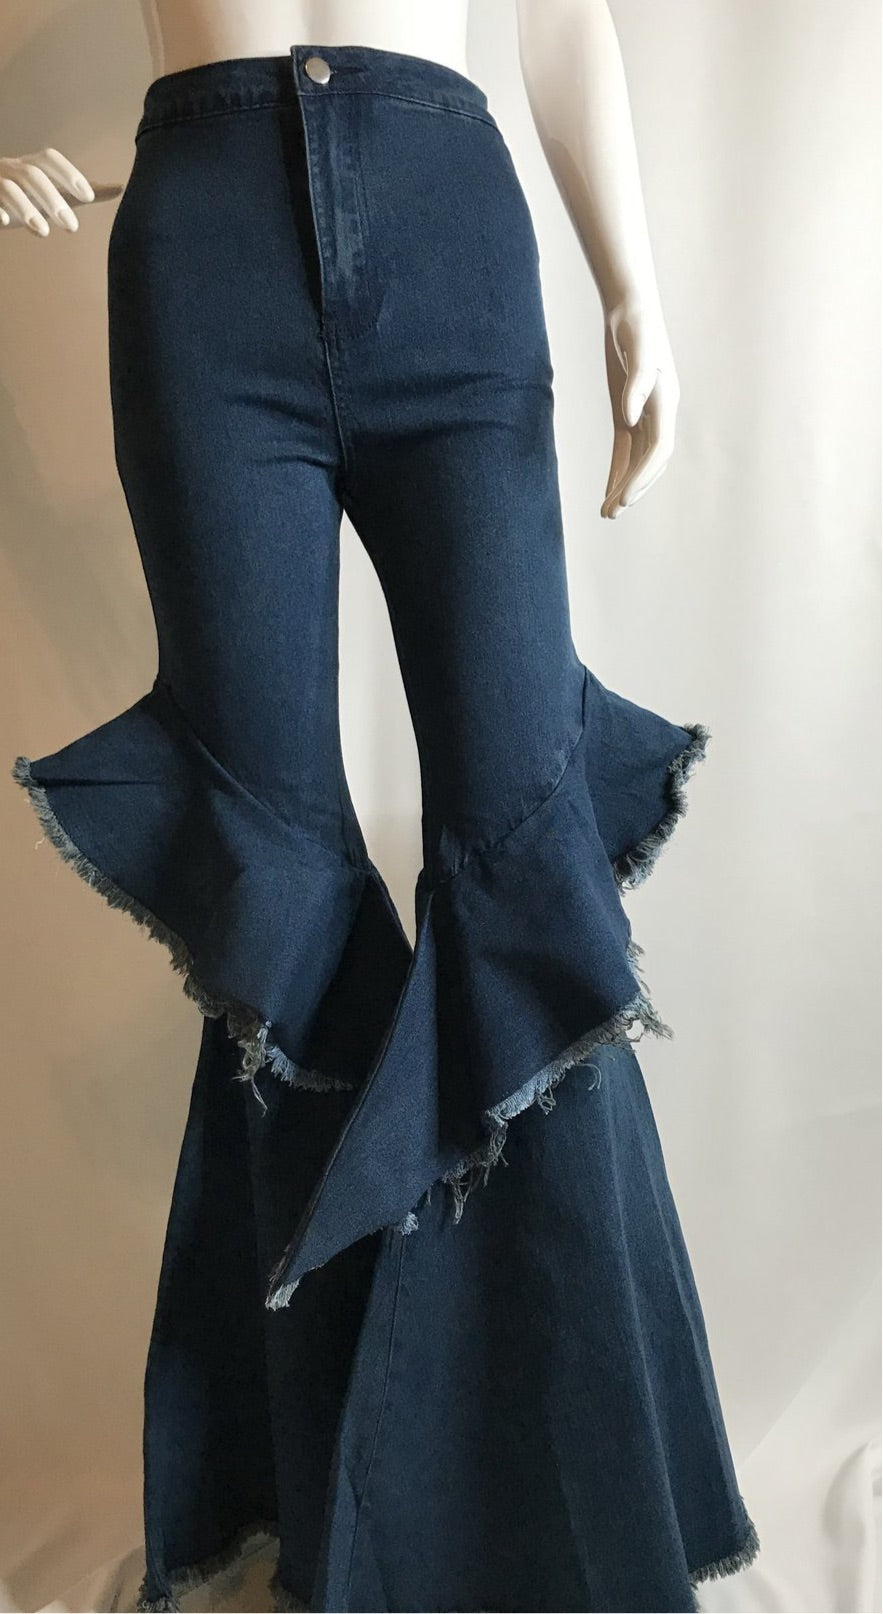 Ruffle Bell Bottom Jeans – Unique Boutique Design